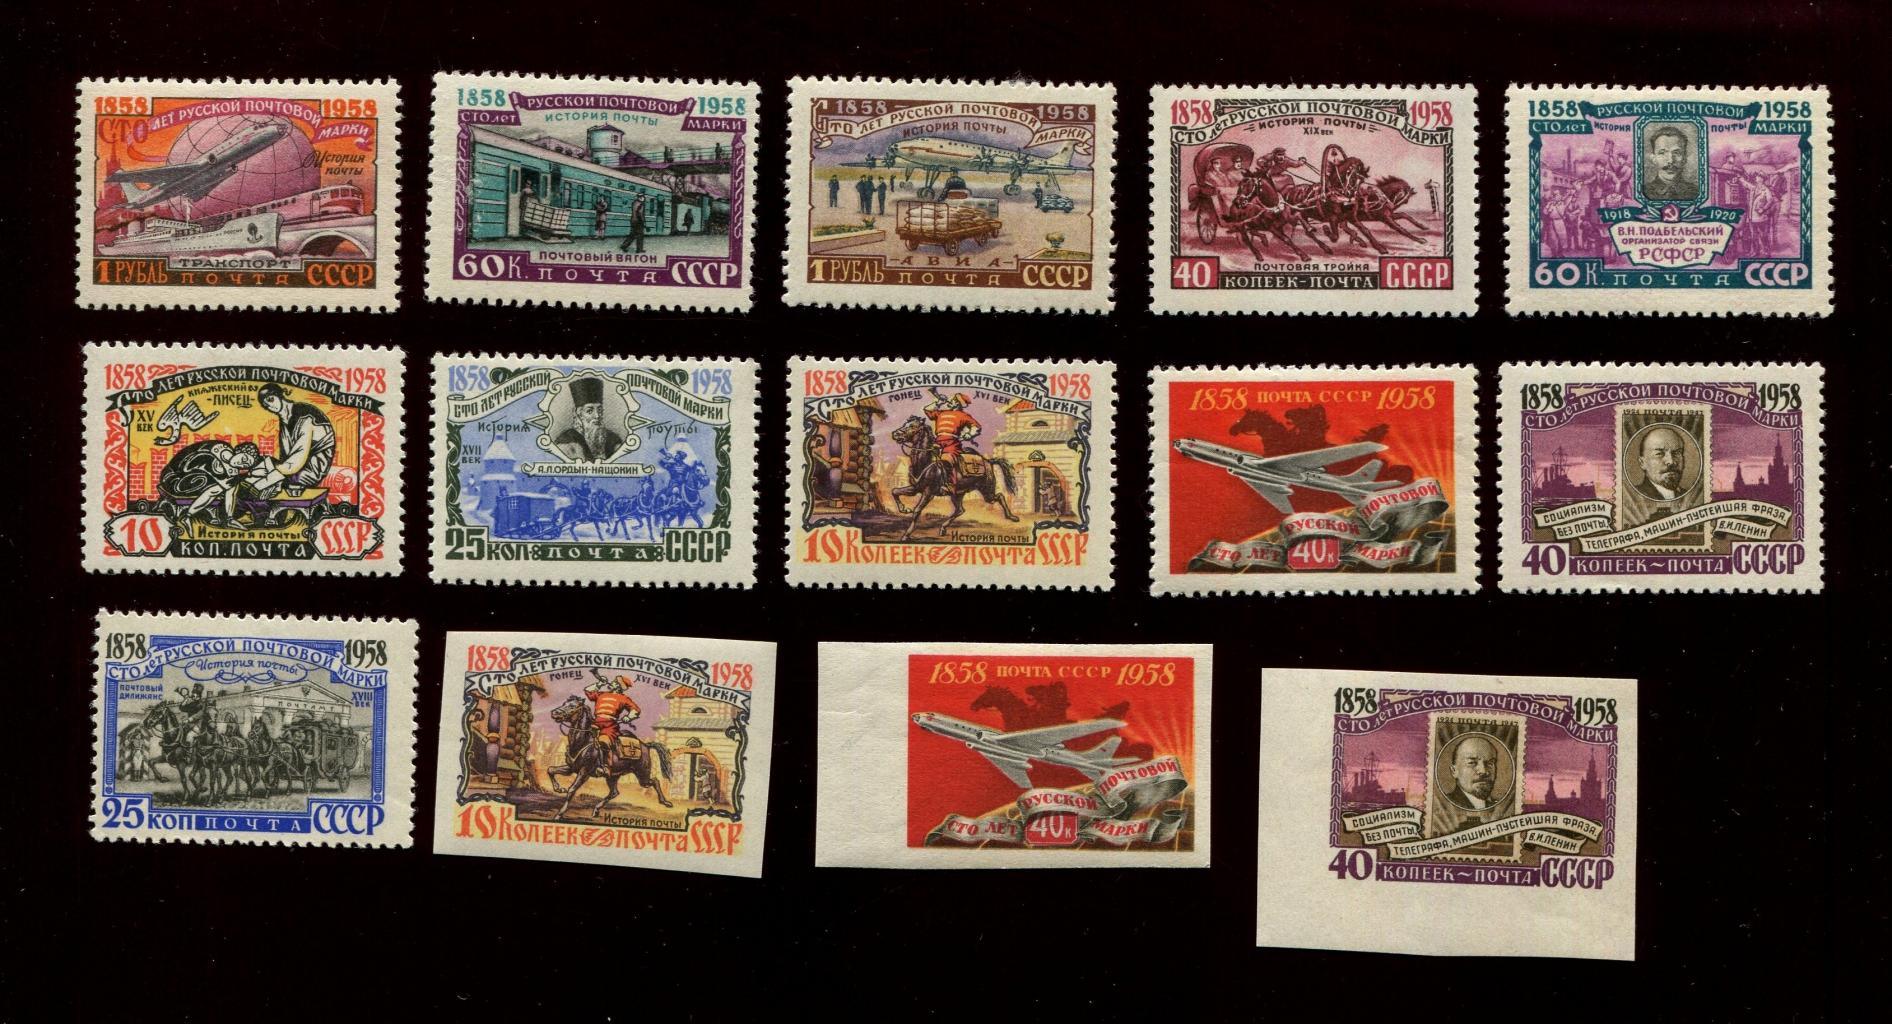 Блоки почтовых марок СССР: какие ценятся?